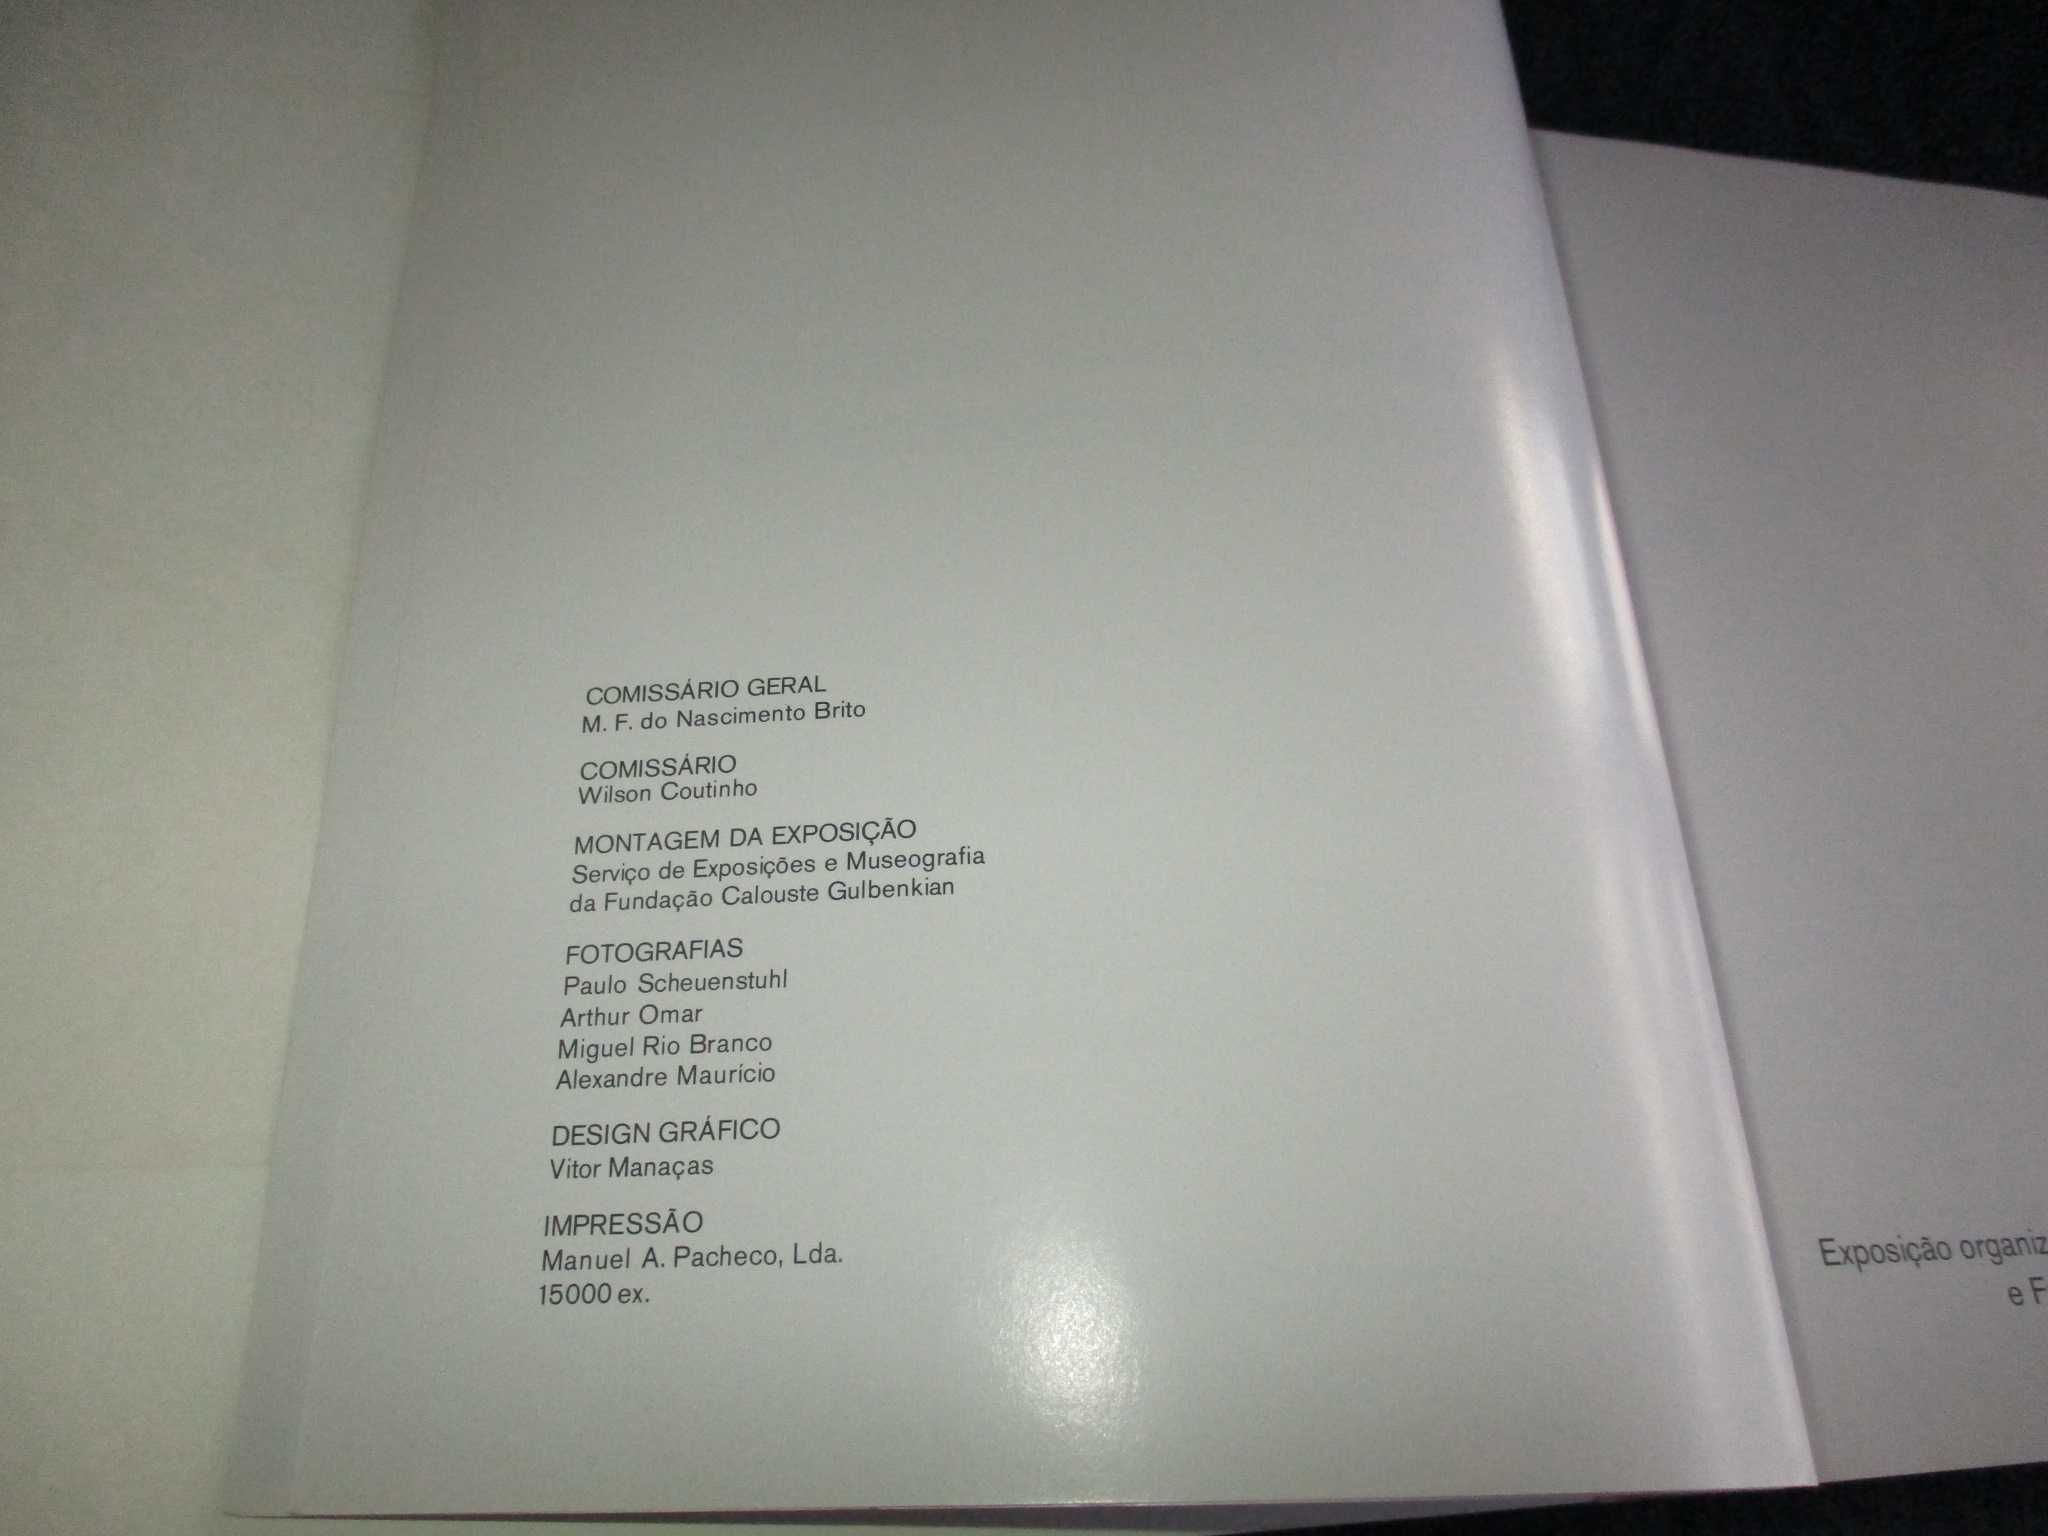 Livro Brasil 60 Anos de Arte Moderna Colecção Gilberto Chateaubriand